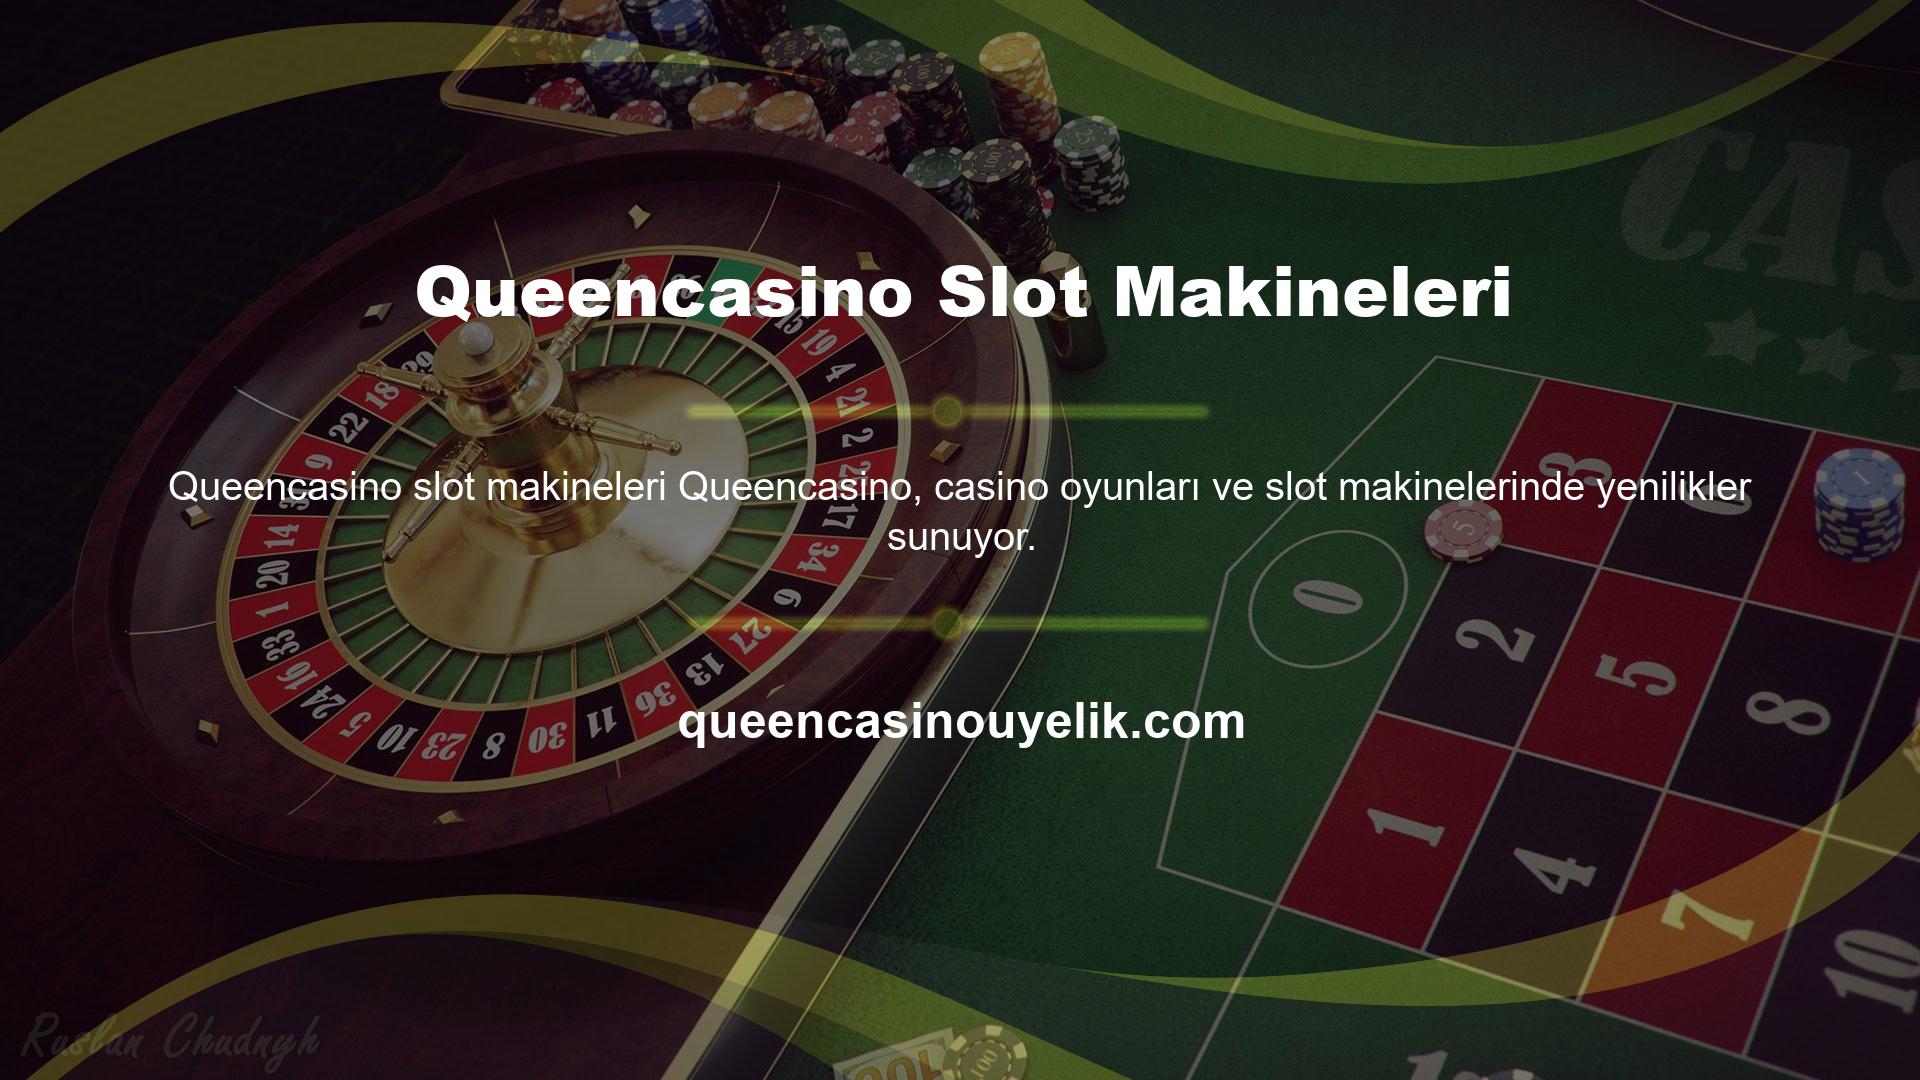 Queencasino, özellikle slot makine oyunları için binlerce seçenek sunuyor